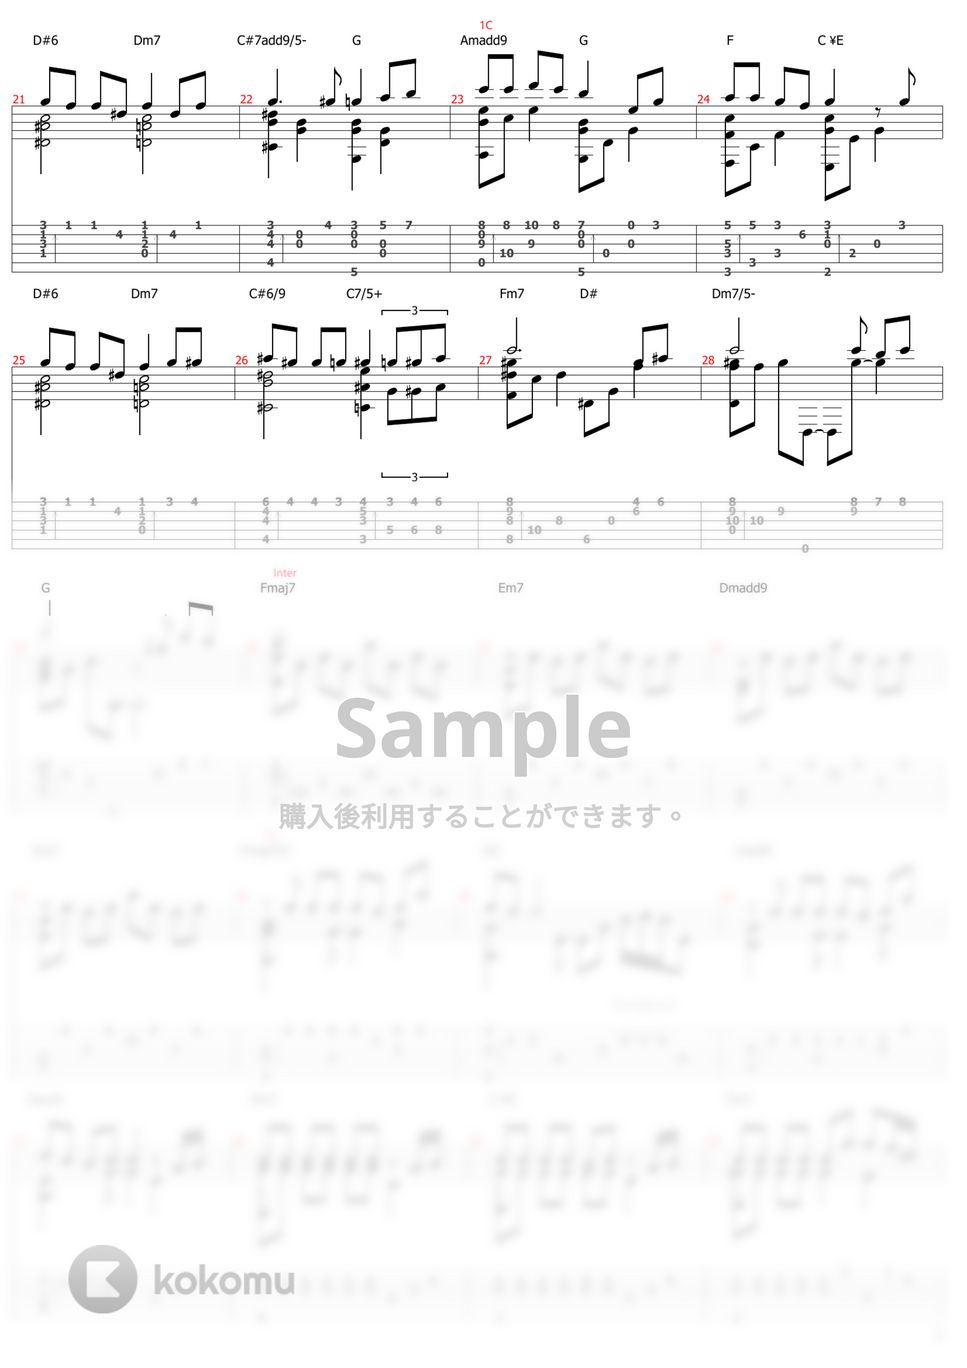 久石譲 - いのちの名前 (ソロギター) by おさむらいさん